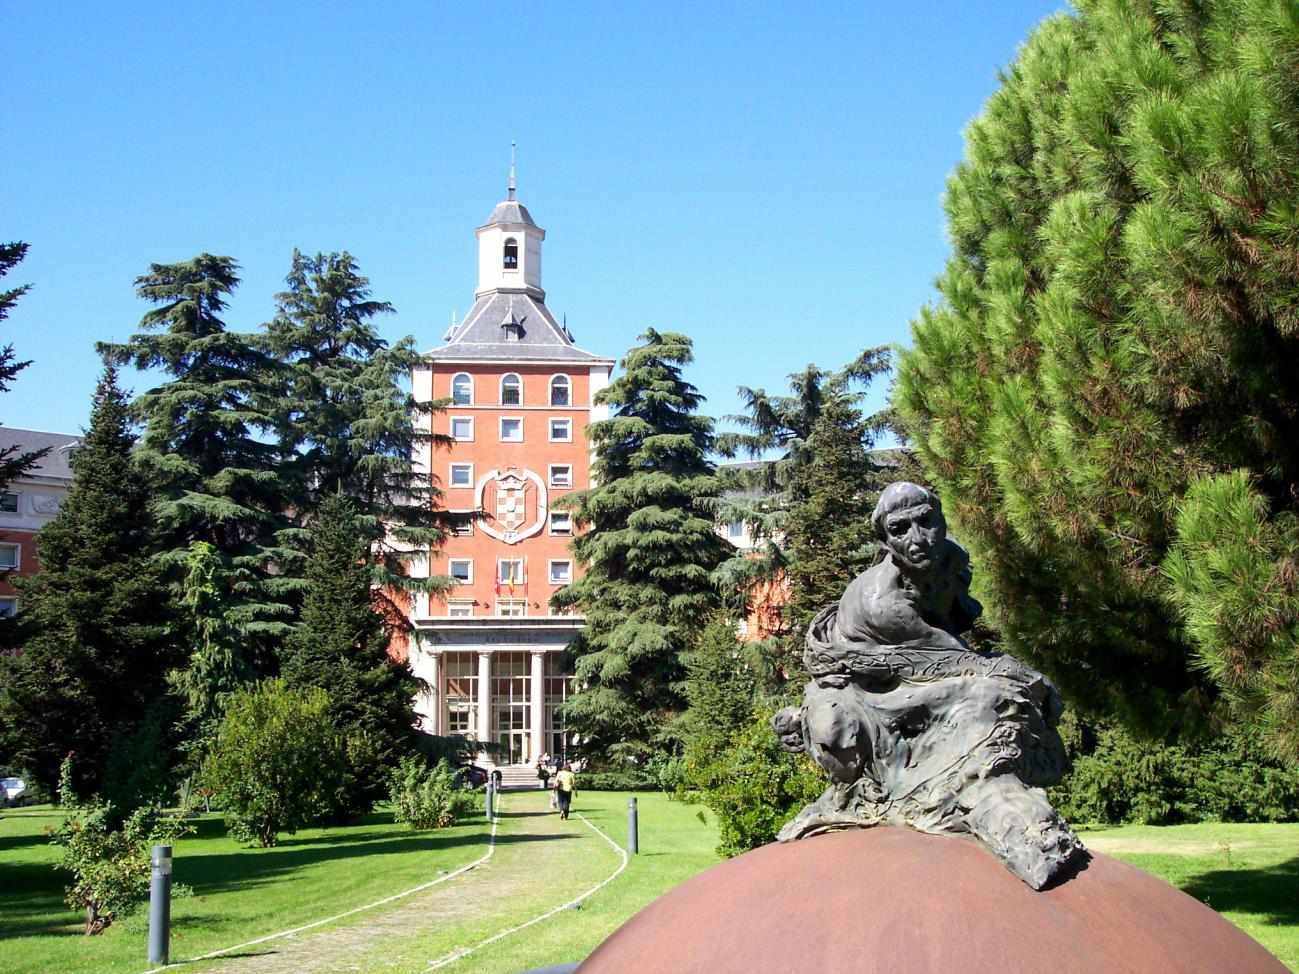 Universidad Complutense de Madrid - Мадридский университет Комплутенсе считается одним из лучших государственных учебных заведений в Испании.